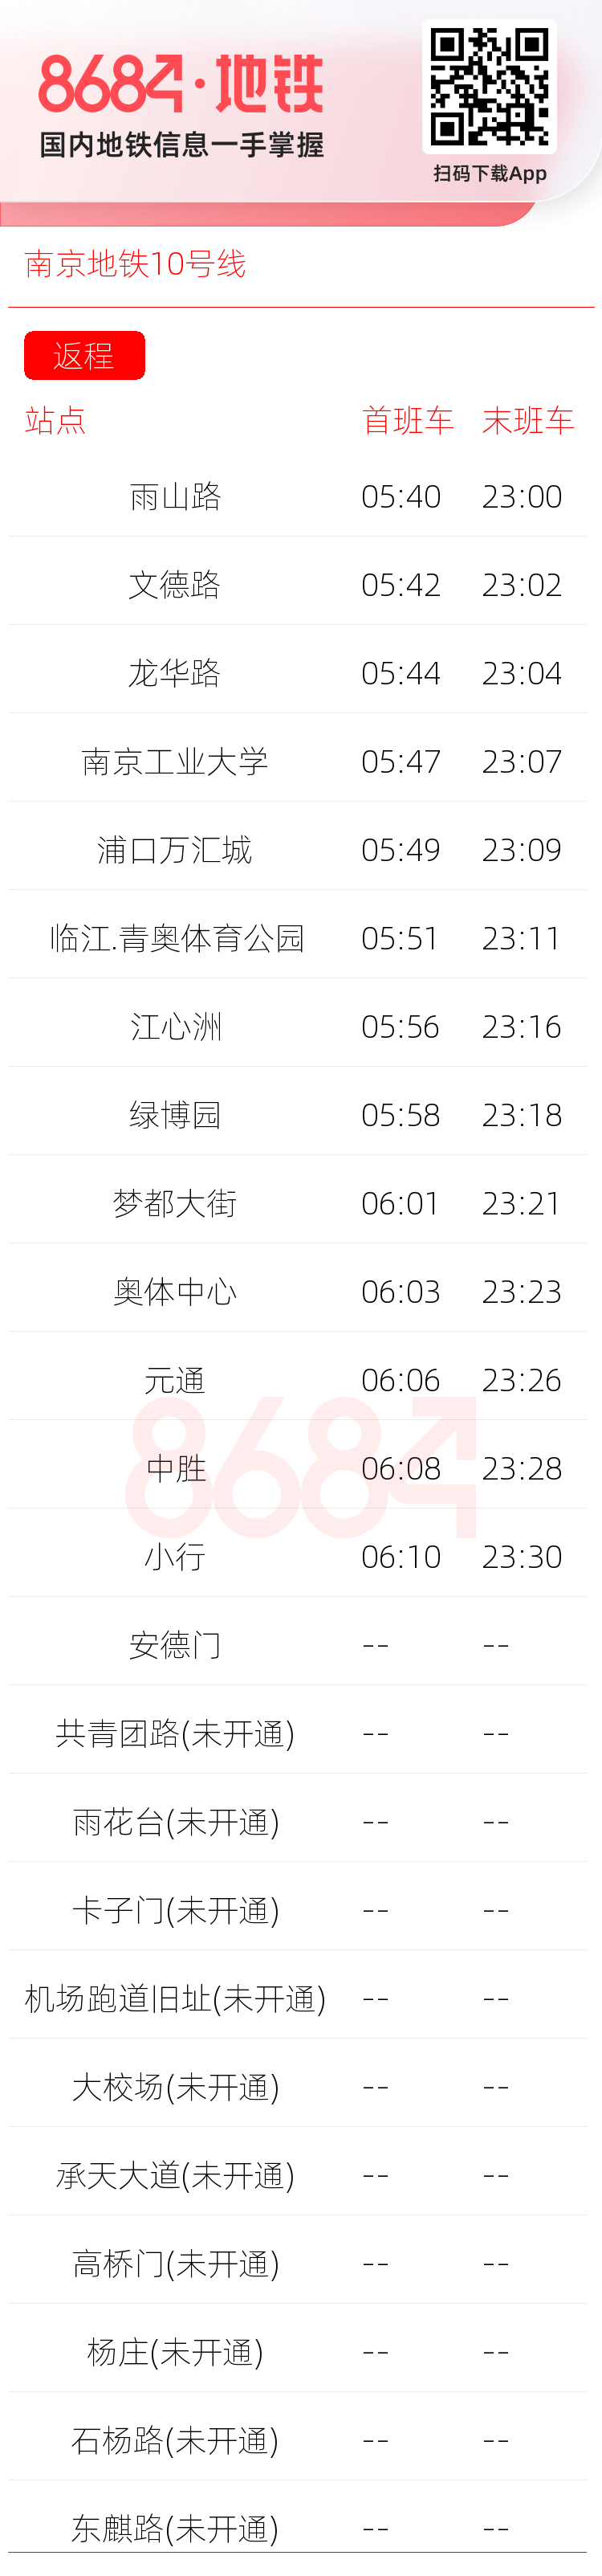 南京地铁10号线运营时间表